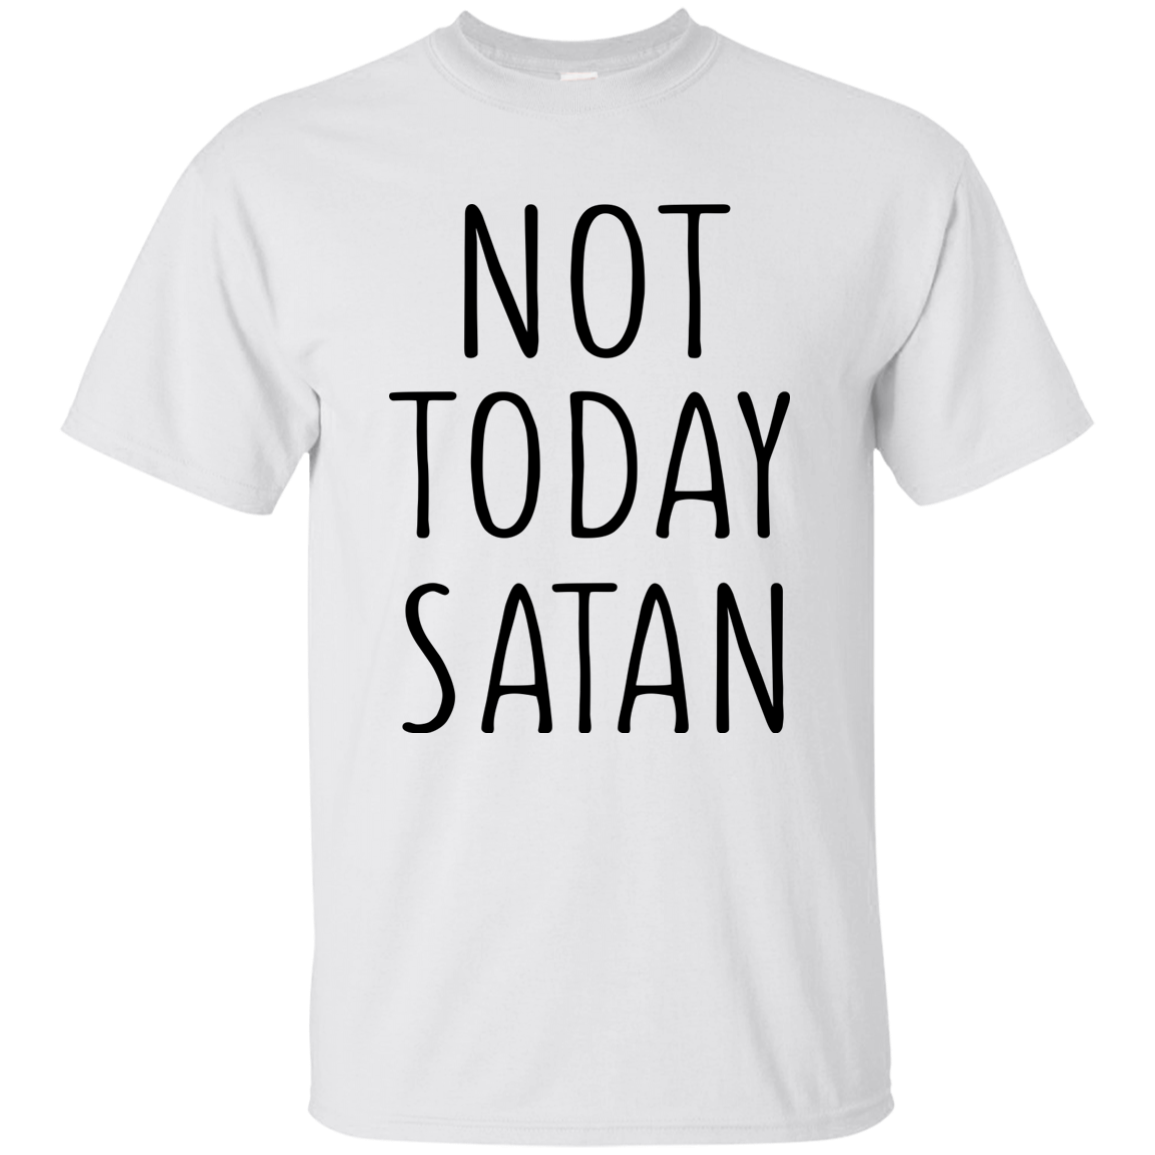 Candace Cameron: Not Today Satan shirt, sweater, tank